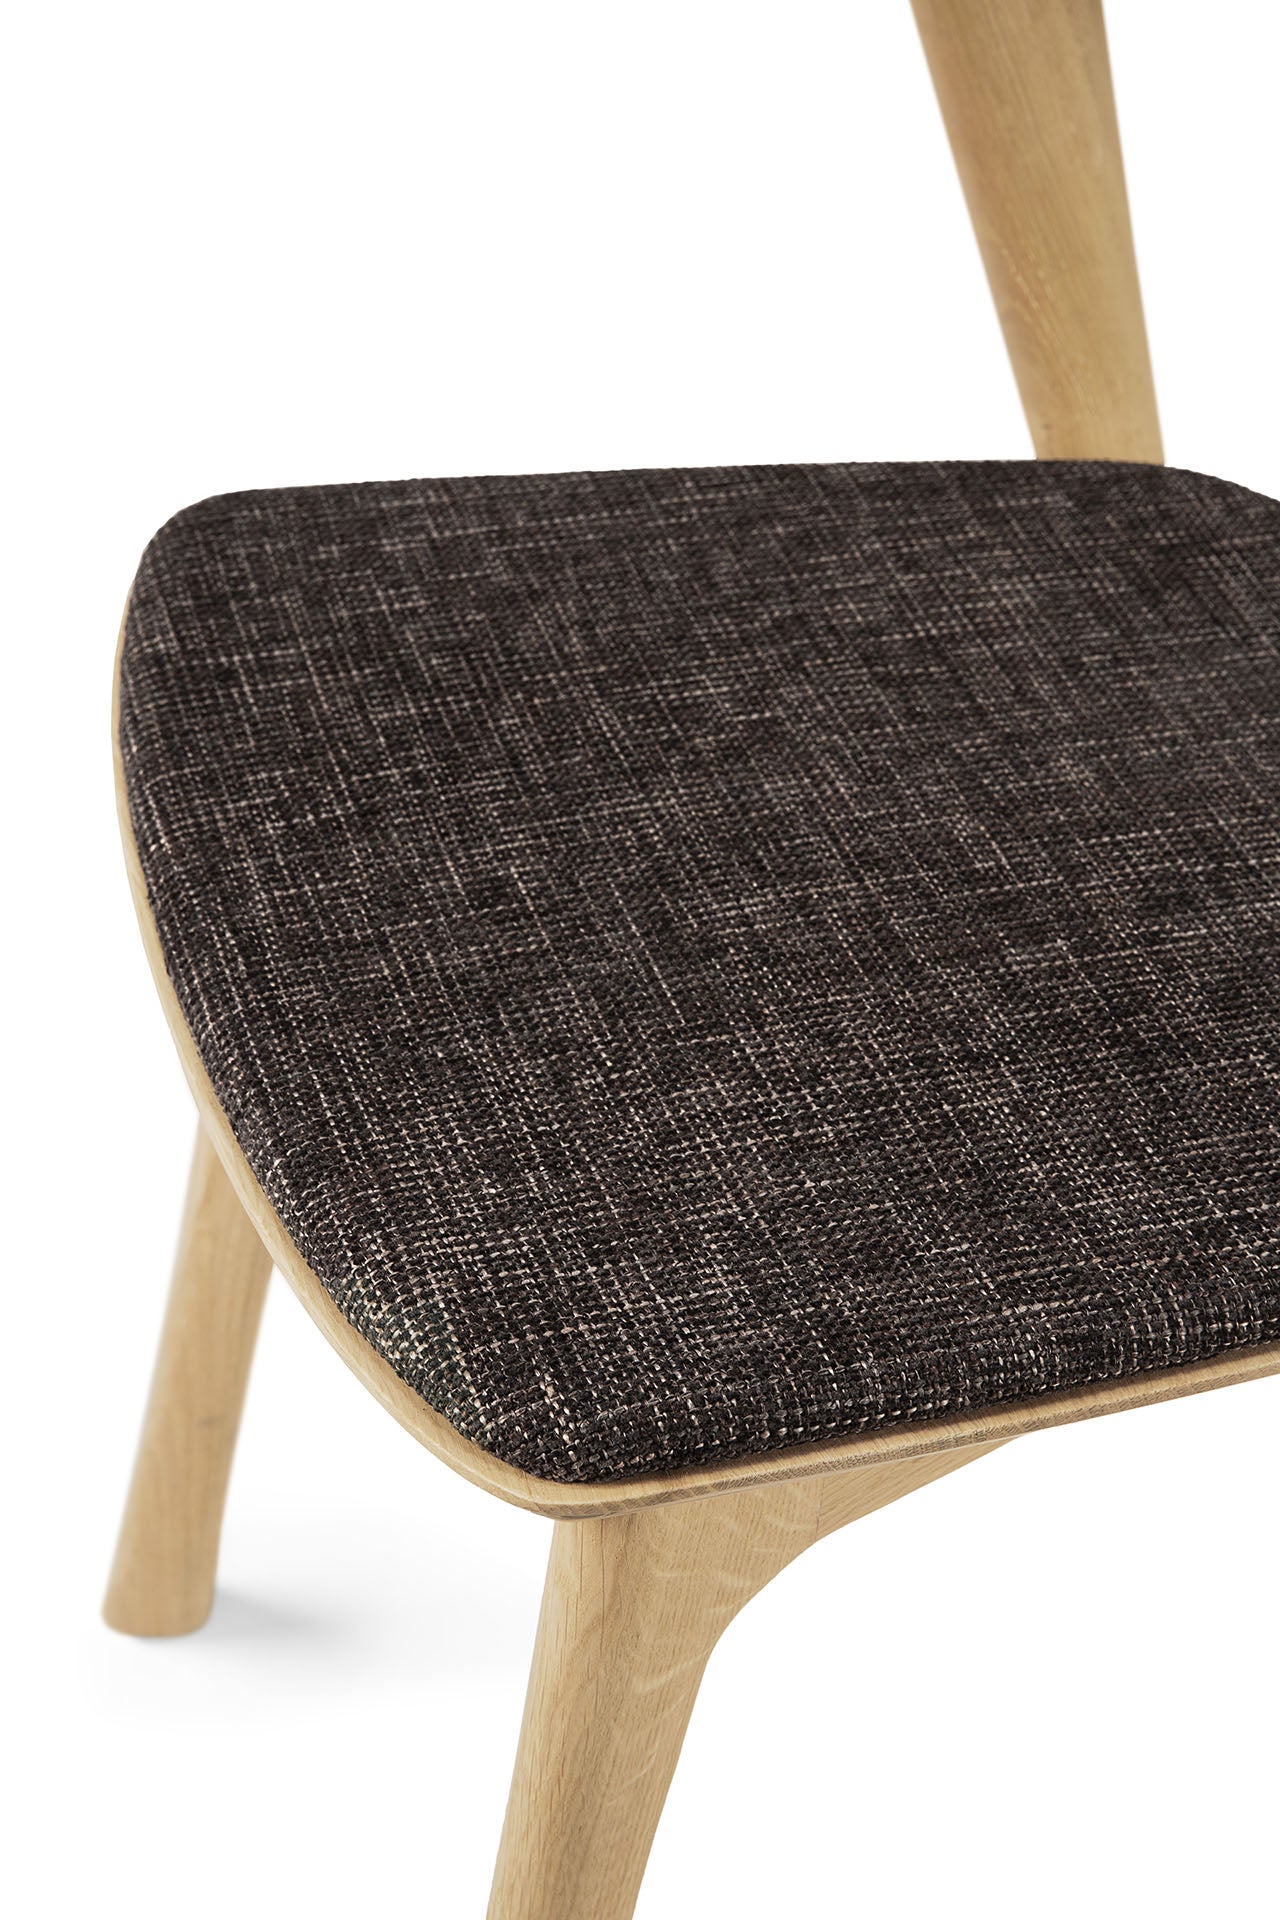 Bok Dining Chair by Alain Van Havre | Oak | Dark Brown Upholstery